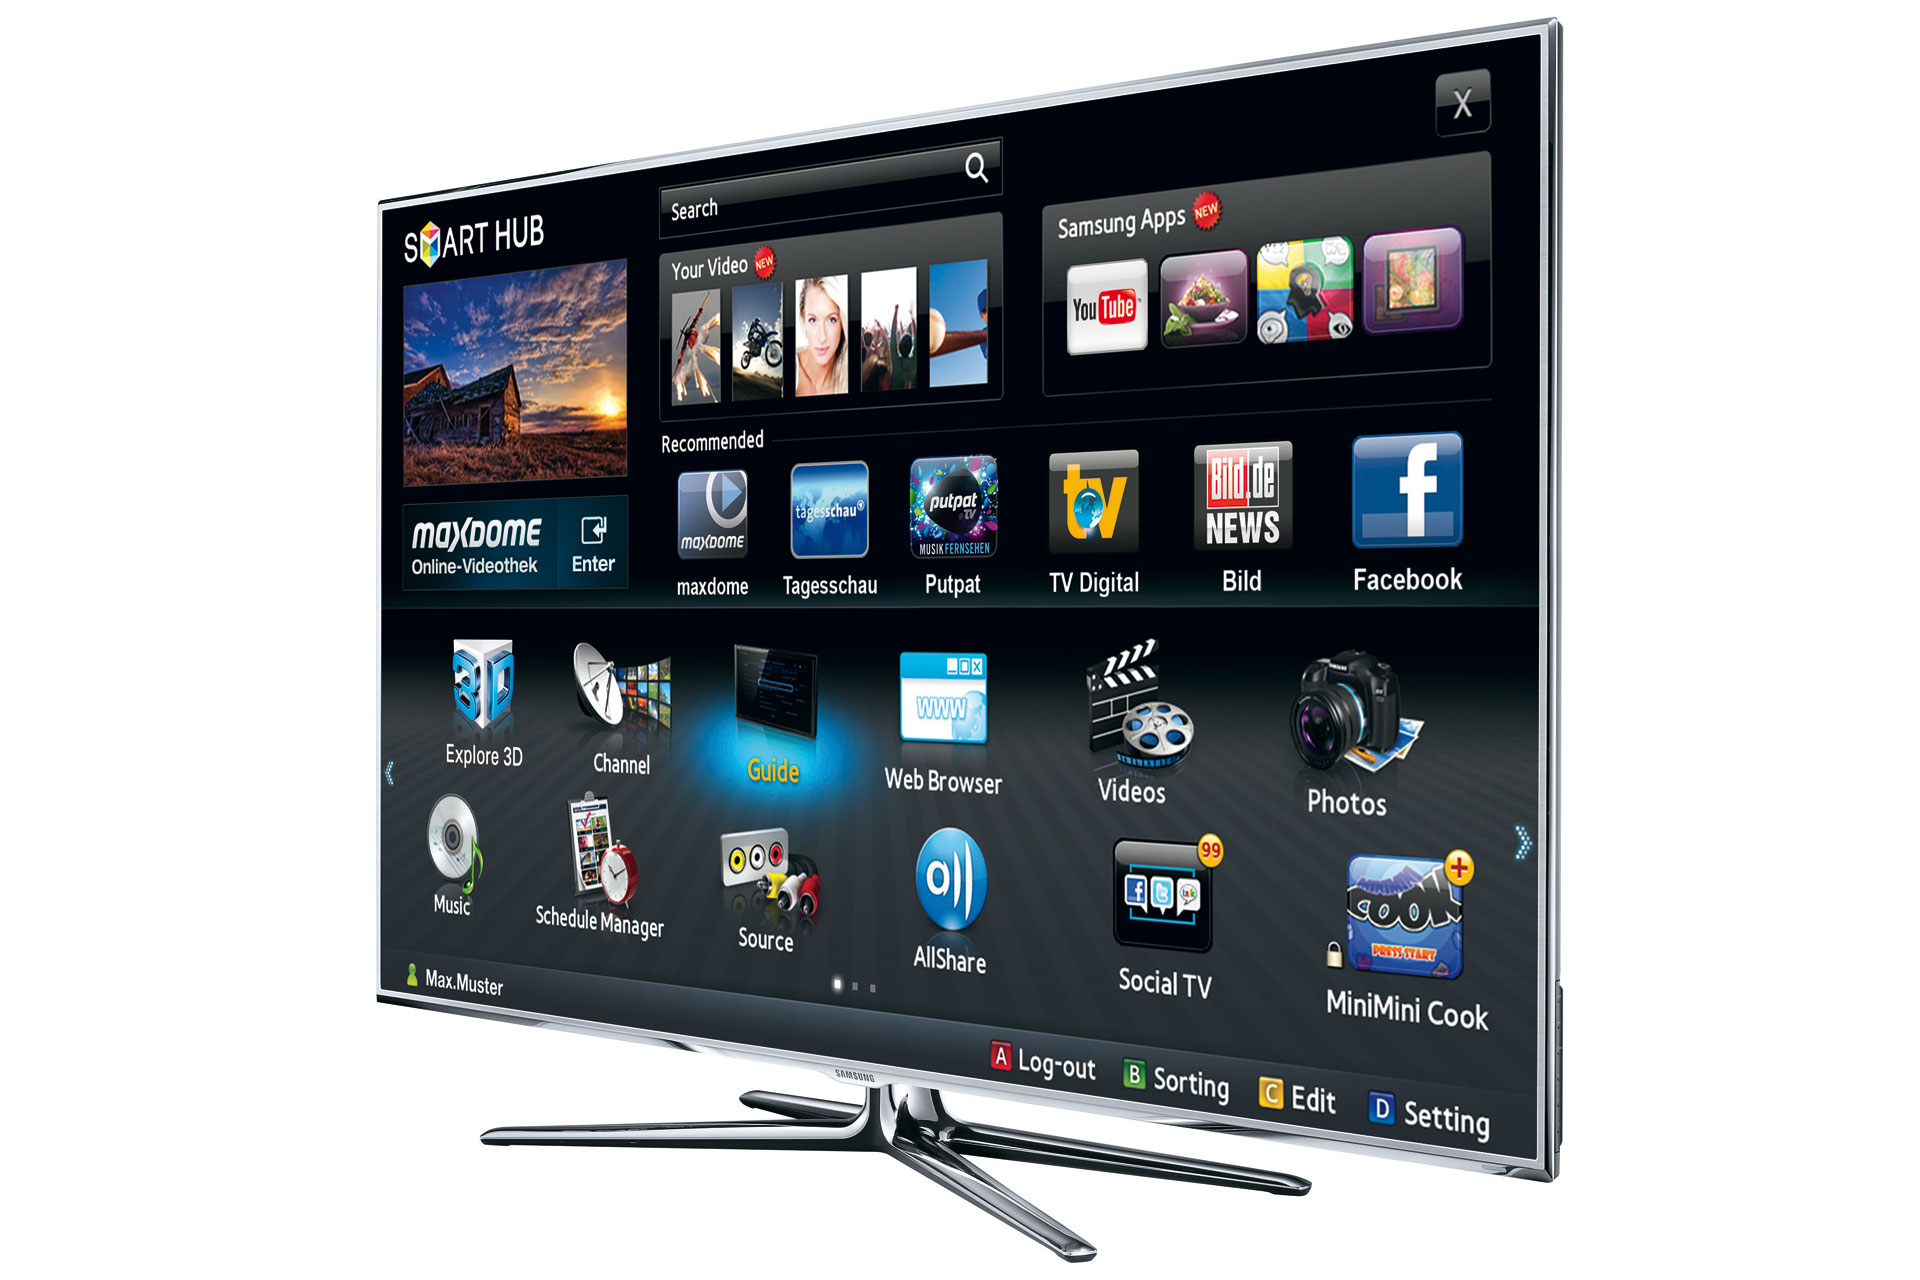 Самсунг смарт новый. Смарт ТВ самсунг смарт Hub. Телевизор Samsung Smart TV. Самсунг смарт ТВ 61 см. Телевизор Samsung Smart Hub 2011.